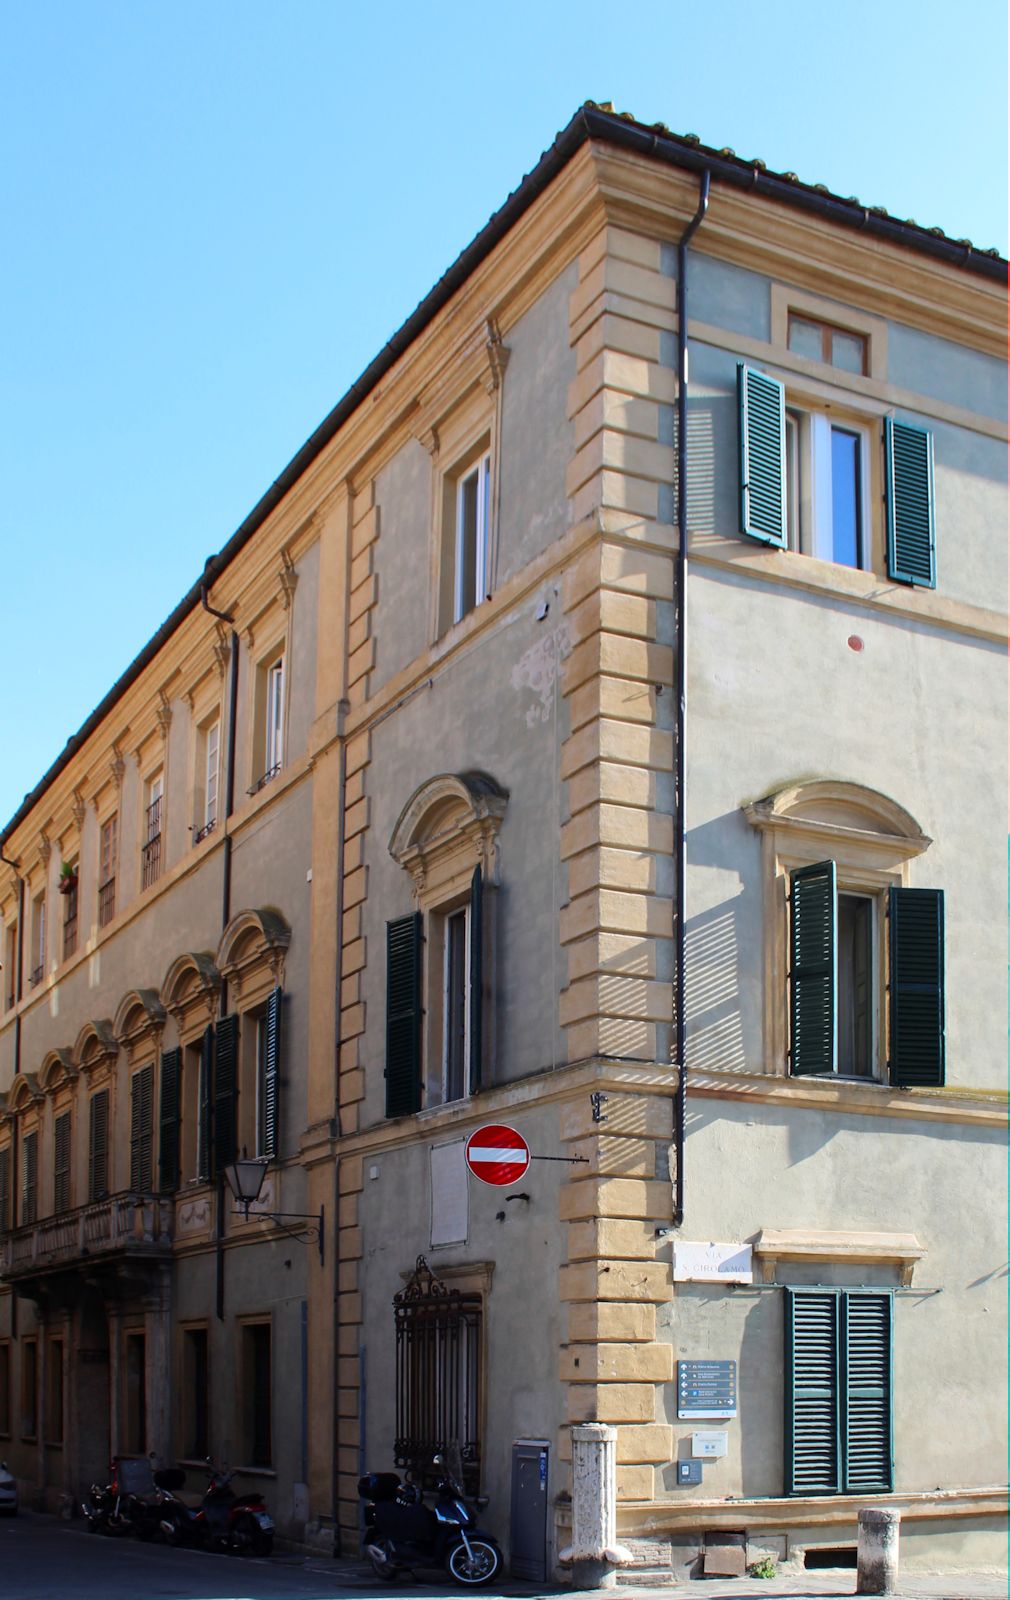 Palazzo Bianchi Bandinelli in Siena